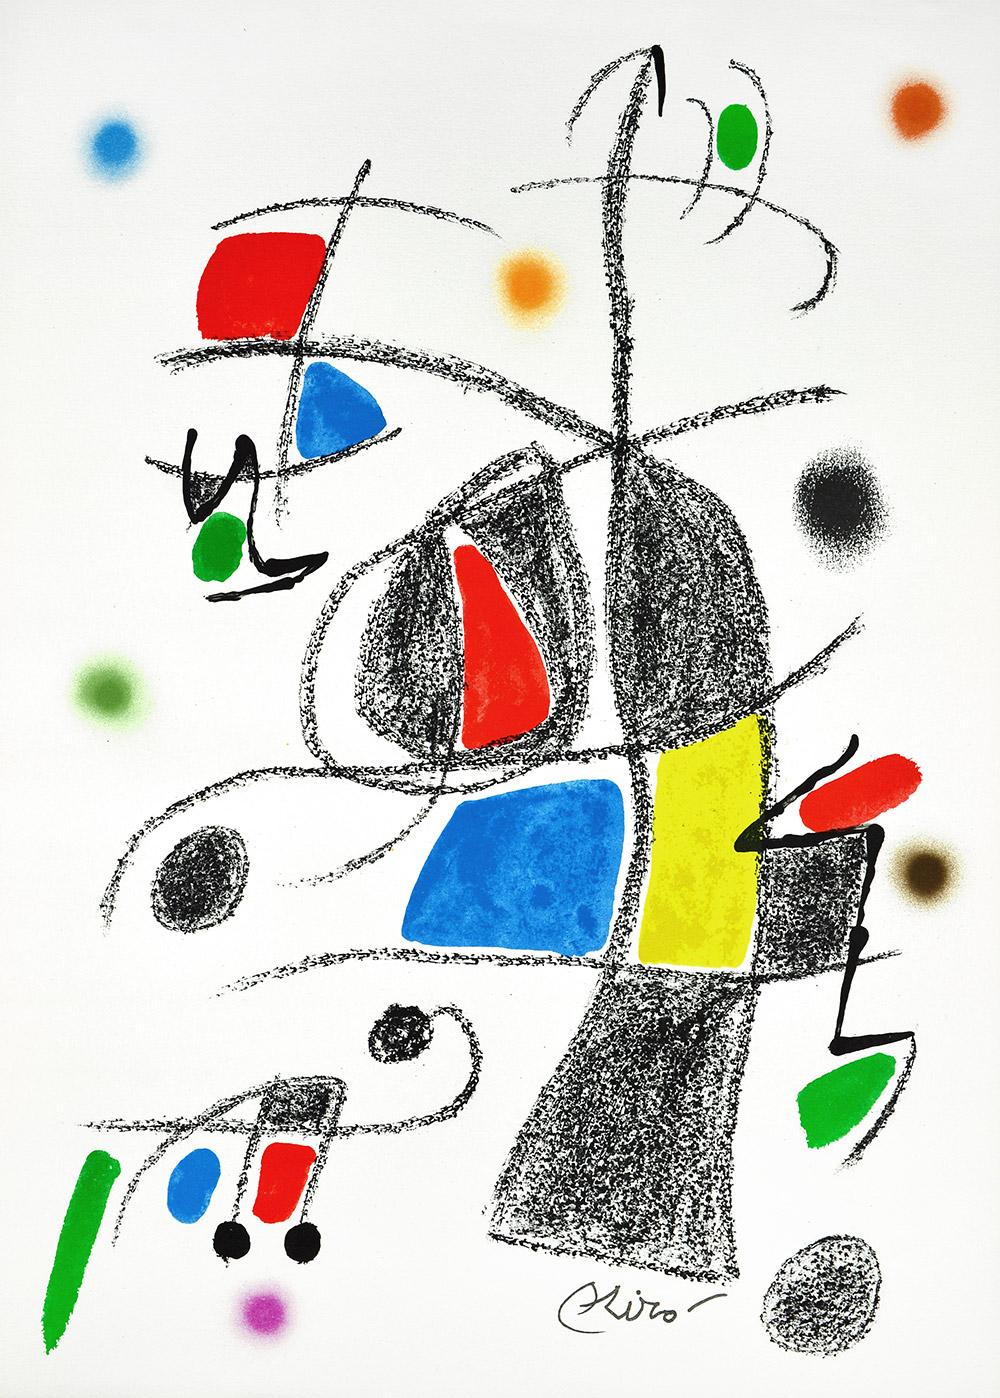 Joan Miró - Maravillas con variaciones acrósticas en el jardín de Miró XVII
Date of creation: 1975
Medium: Lithograph on Gvarro paper
Edition: 1500
Size: 49,5 x 35,5 cm
Observations: Lithograph on Gvarro paper plate signed. Edited by Polígrafa,